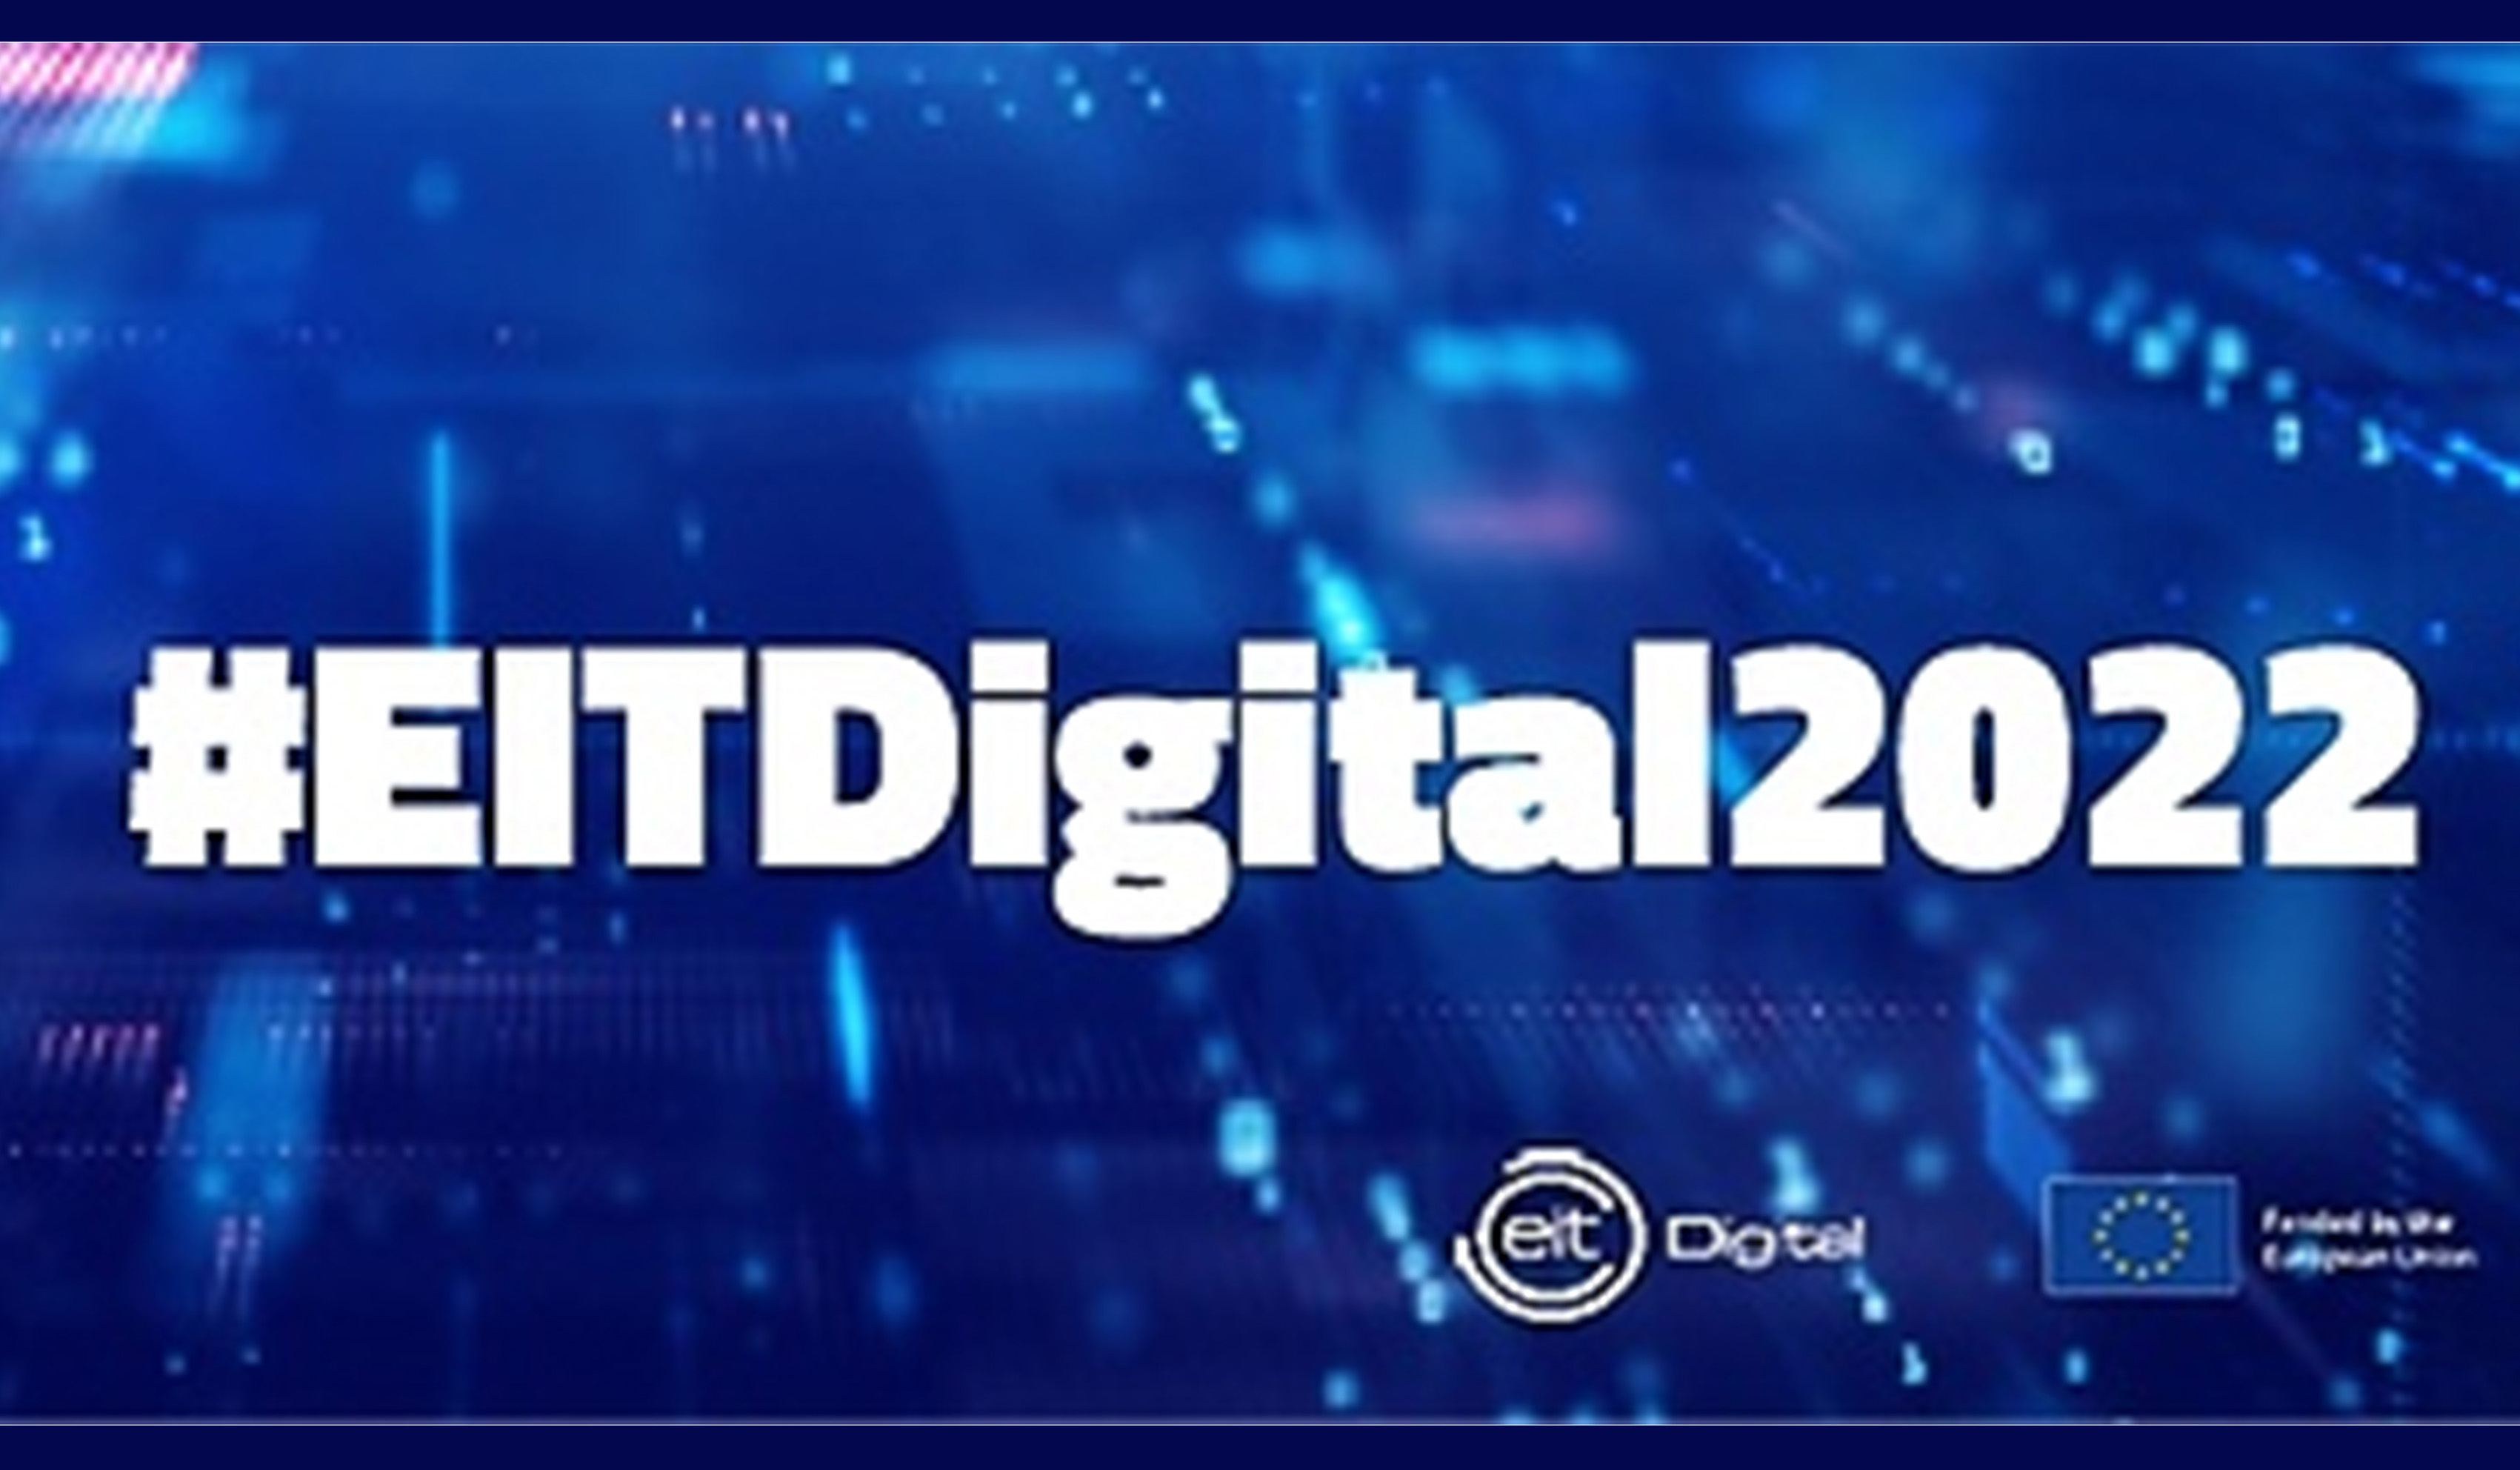 EIT Digital 2022 Brokerage Event